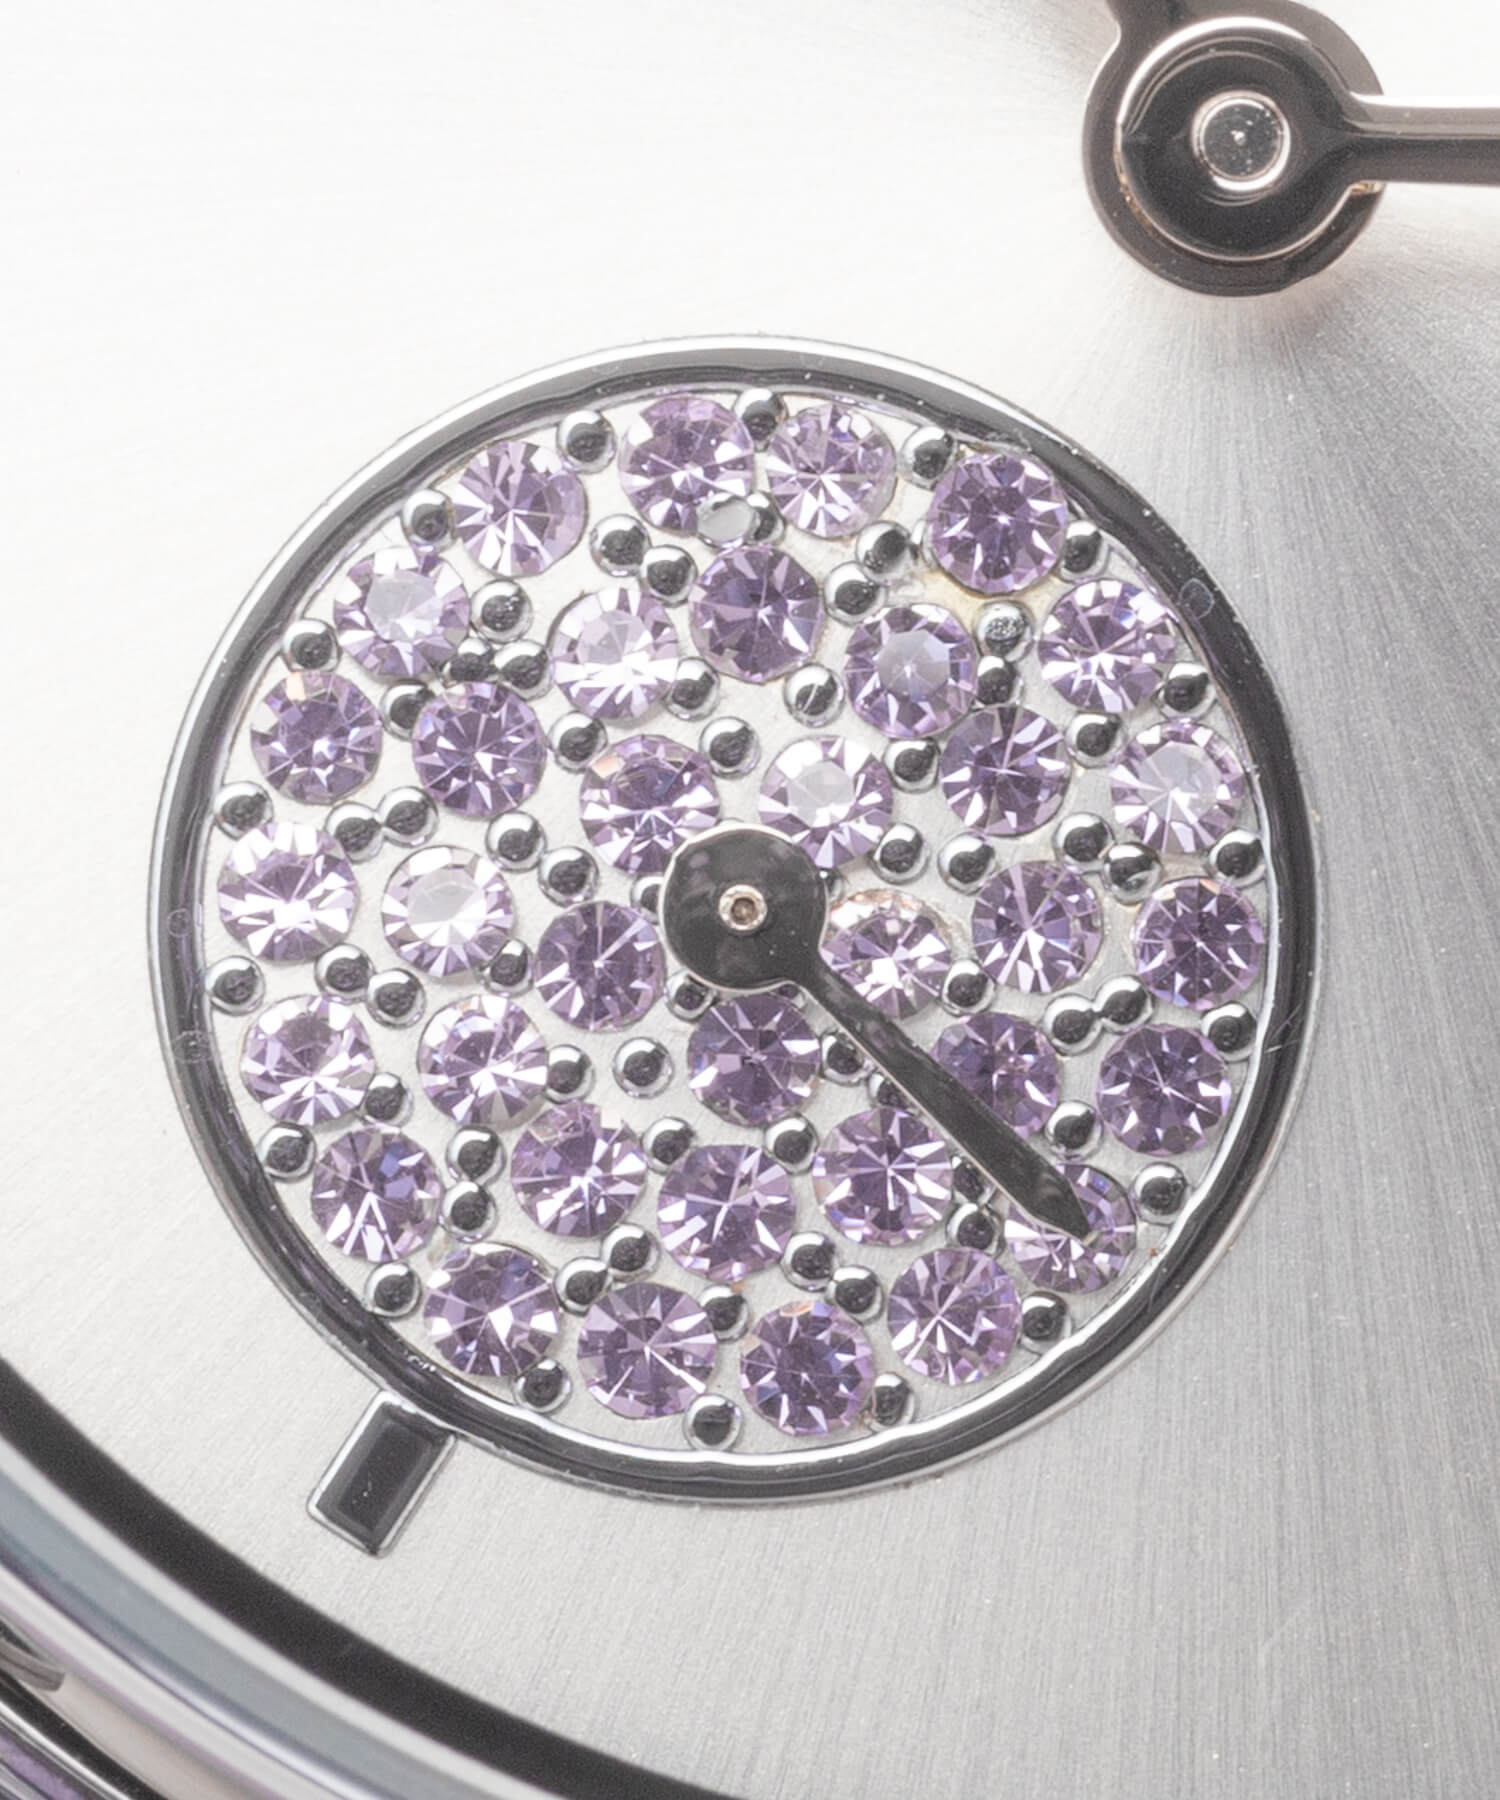 国内正規製品保証付き6ヶ月間ANNE KLEIN　カラースワロフスキースモールセコンドウォッチ　腕時計